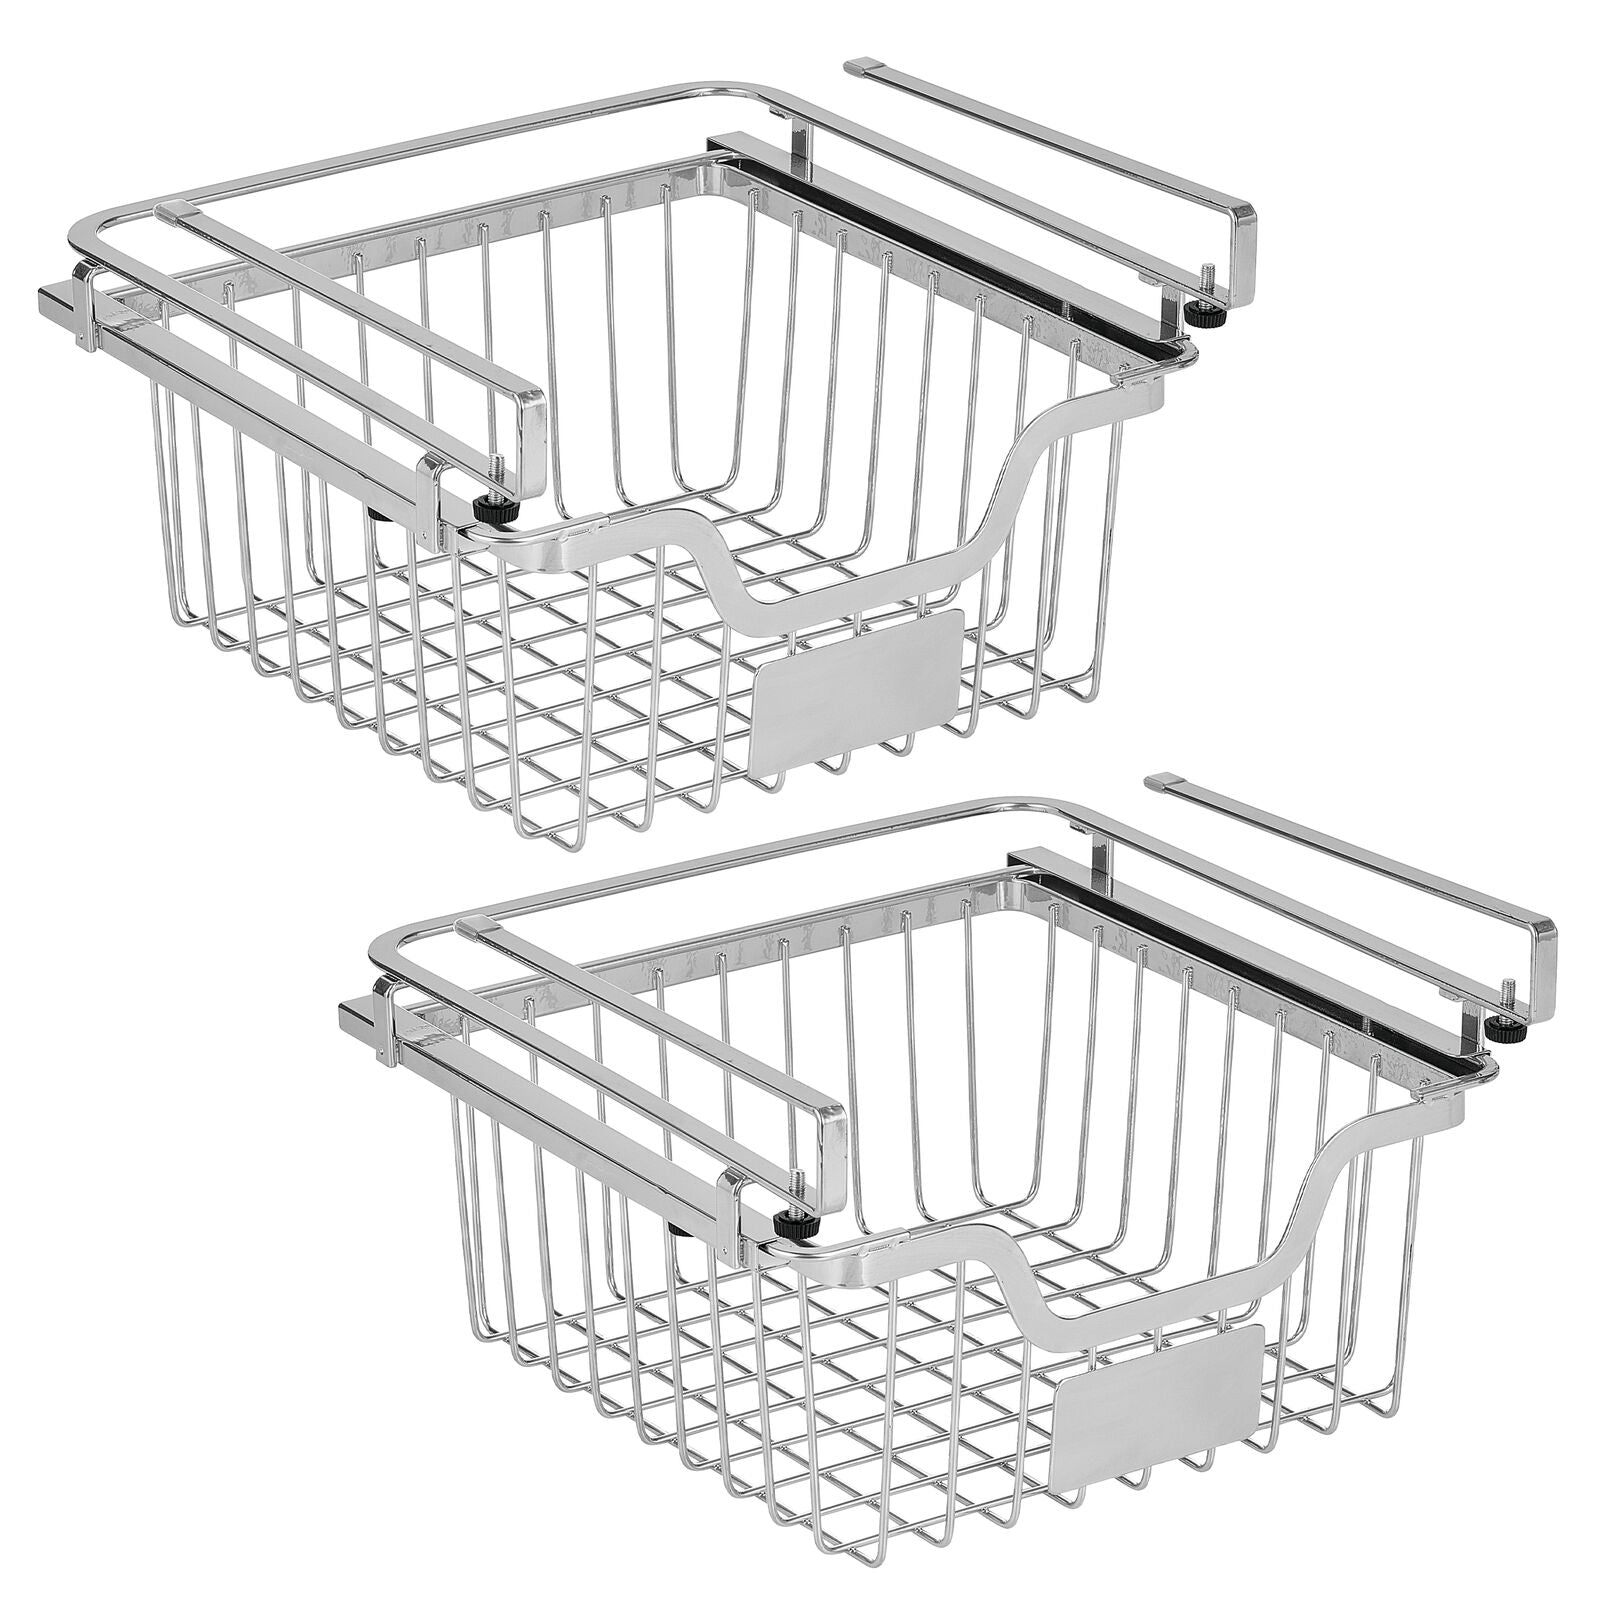 InterDesign Under Shelf Wire Basket, Chrome